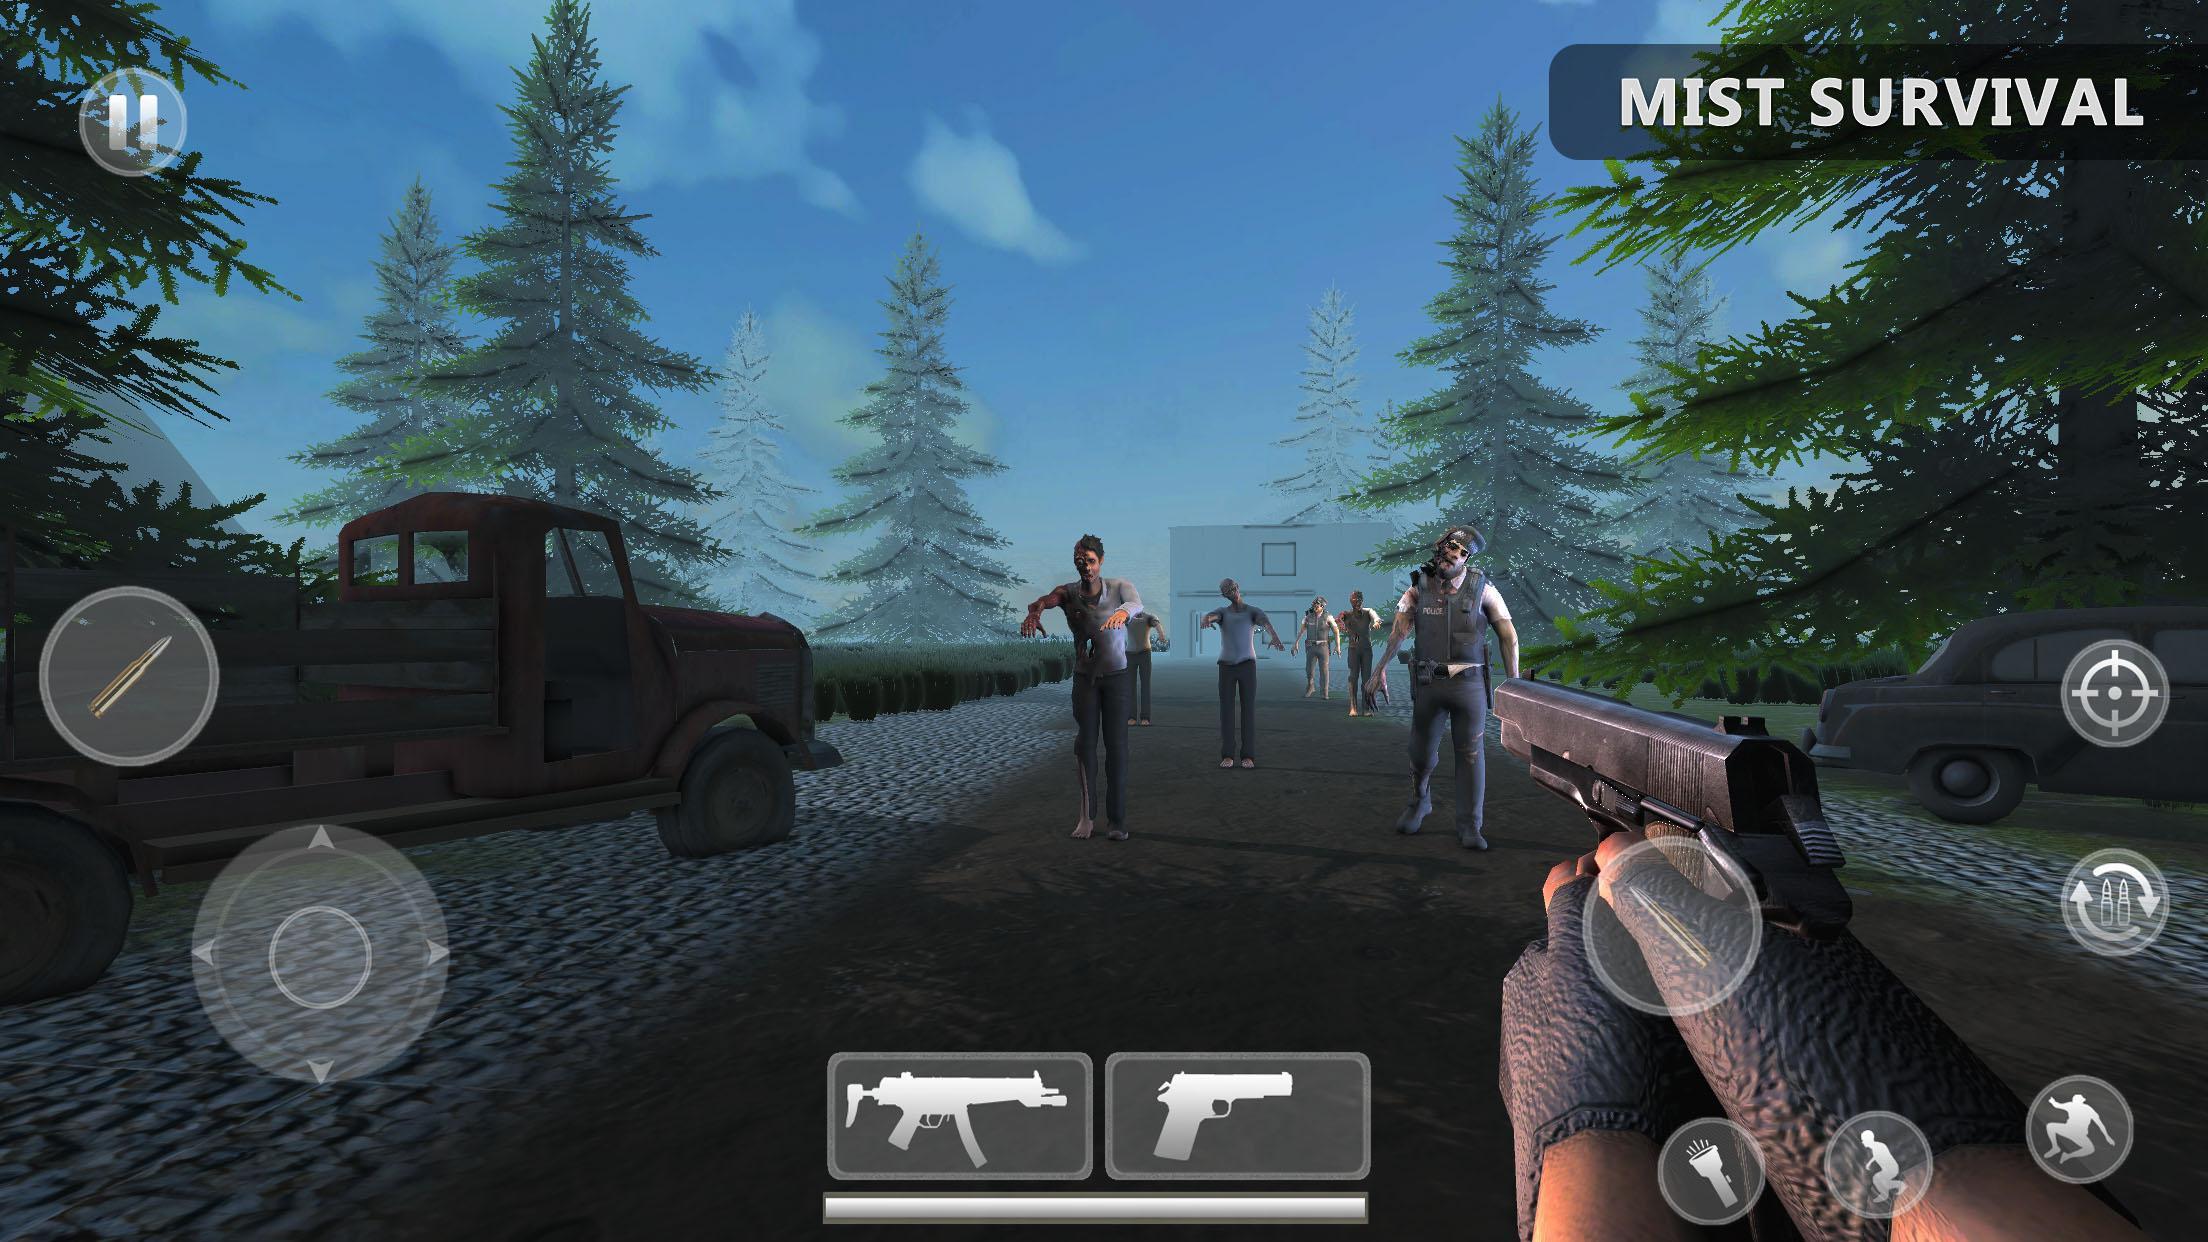 Лучшие игры зомби выживания. Мист сурвайвал 1. Mist Survival Скриншоты. Симулятор выживания в зомби АПОКАЛИПСИСЕ.